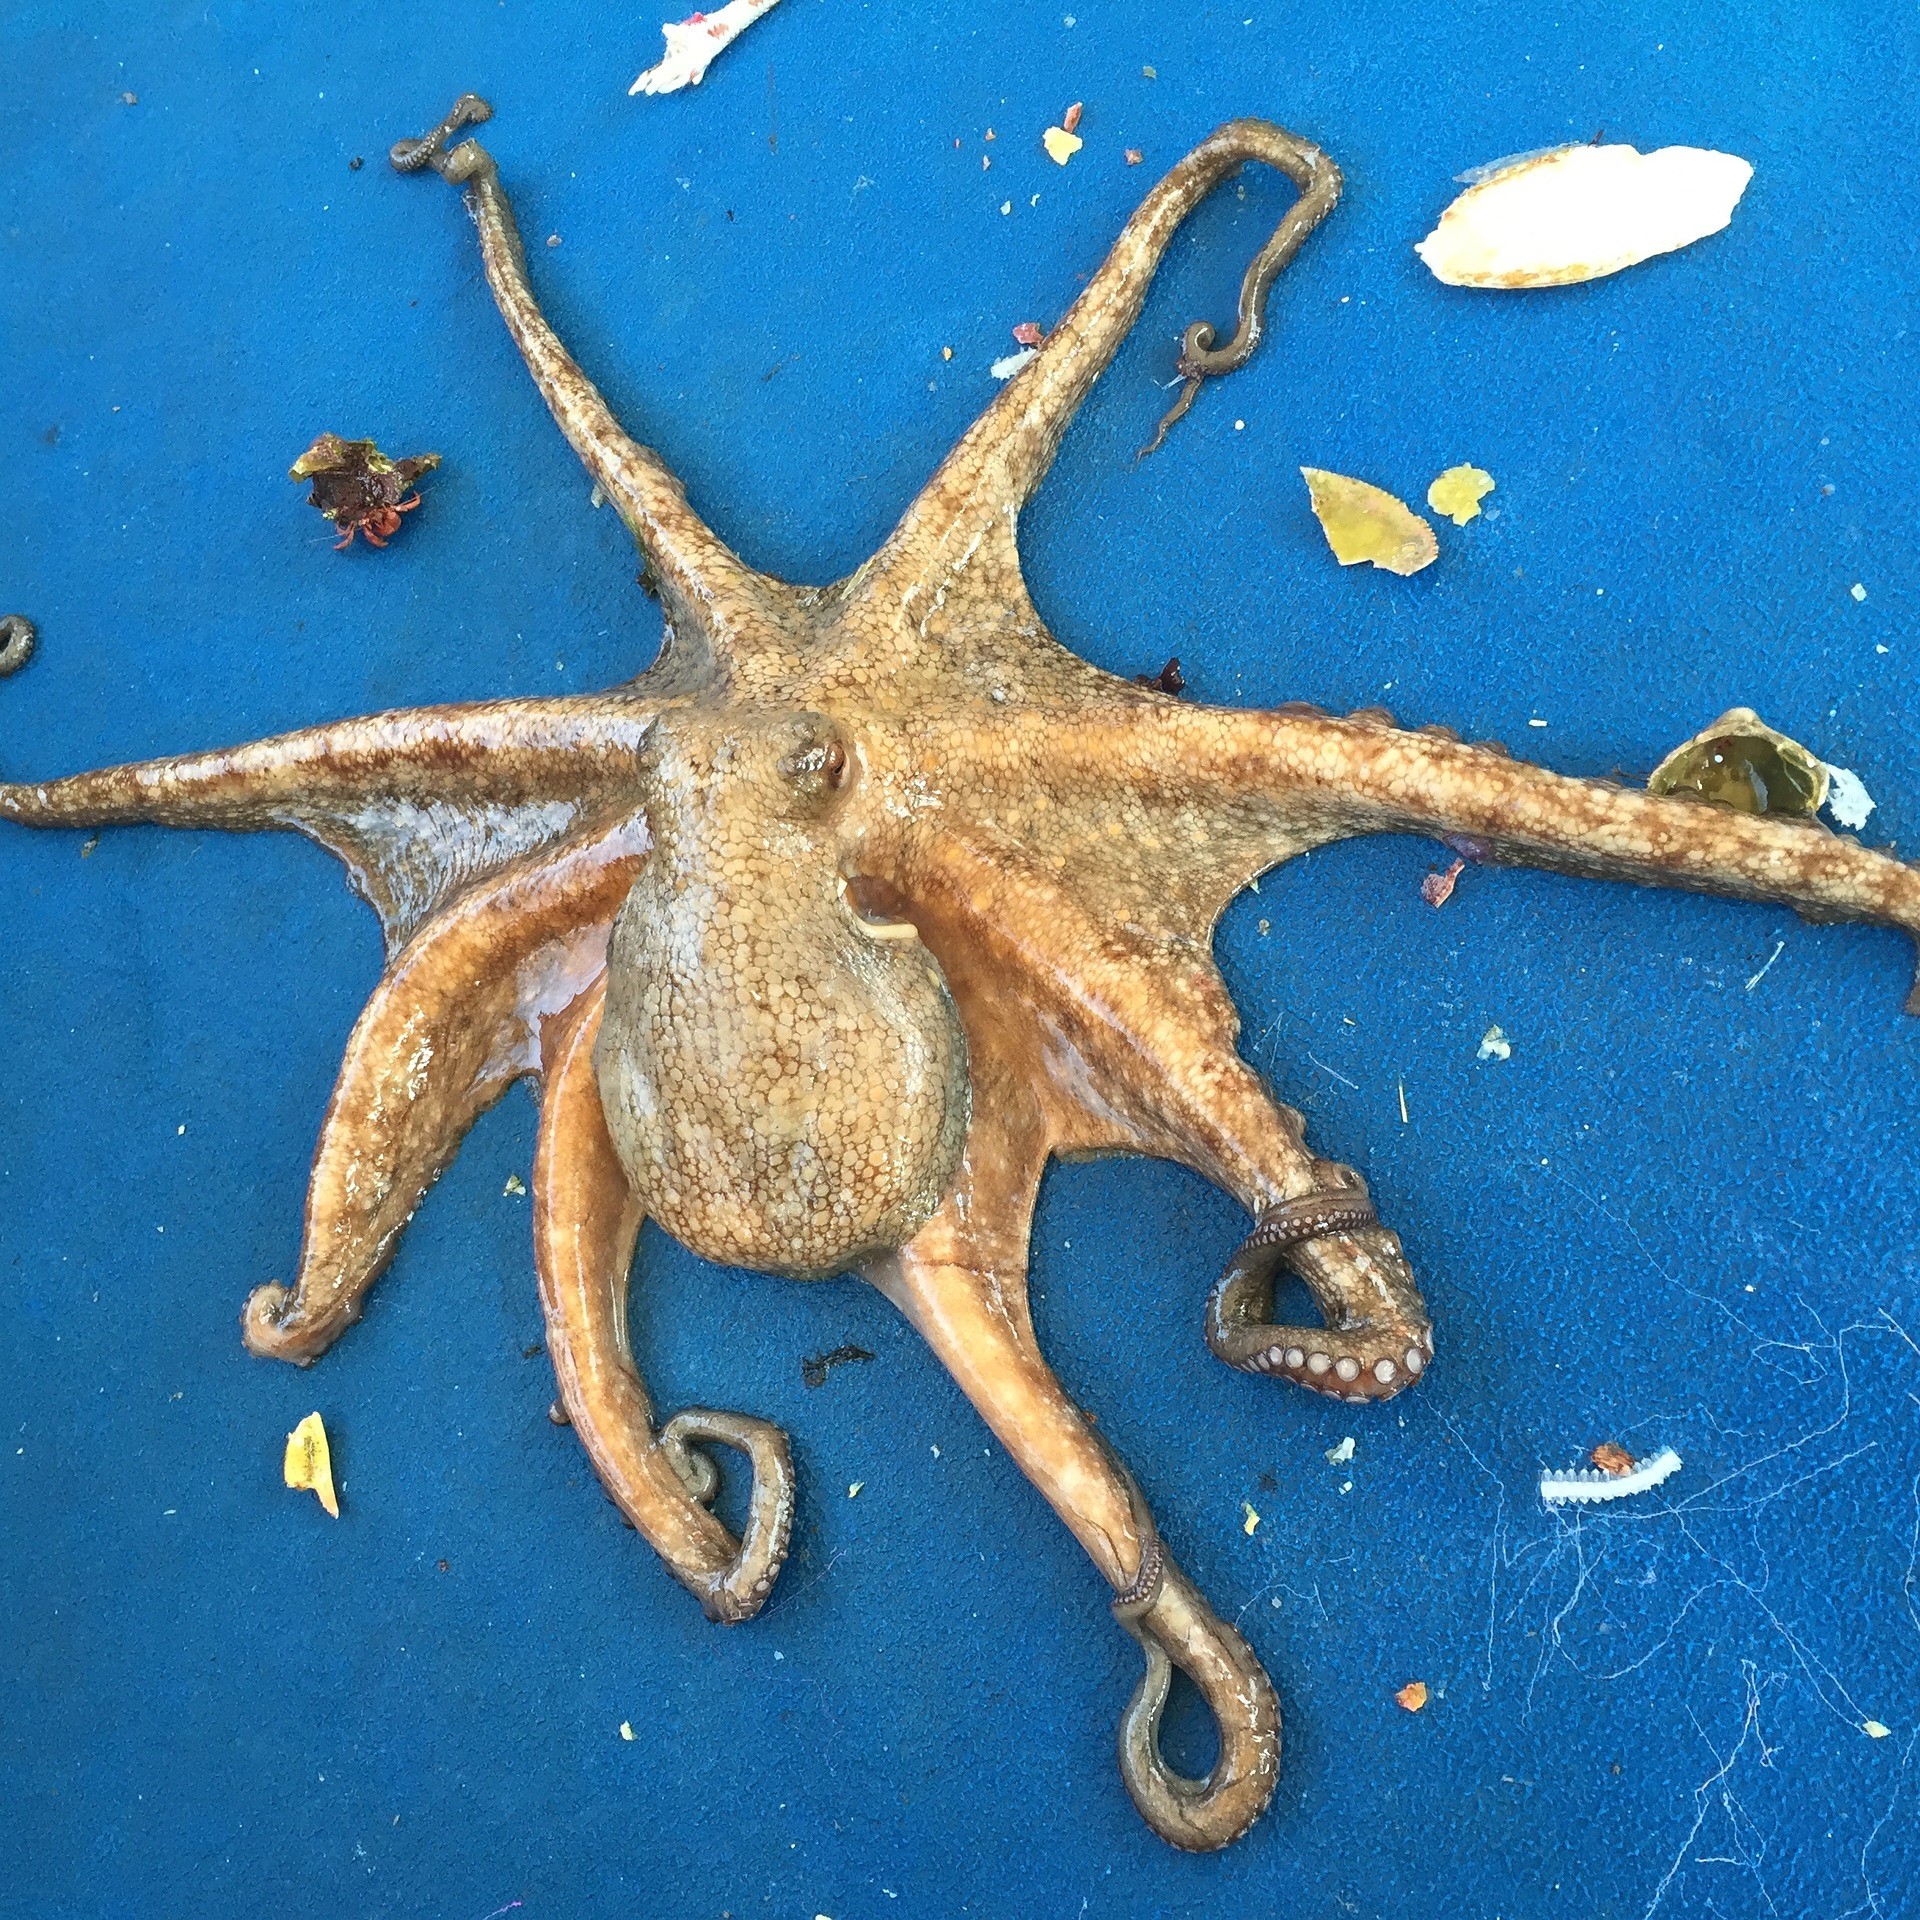 octopus-1164480_1920.jpg